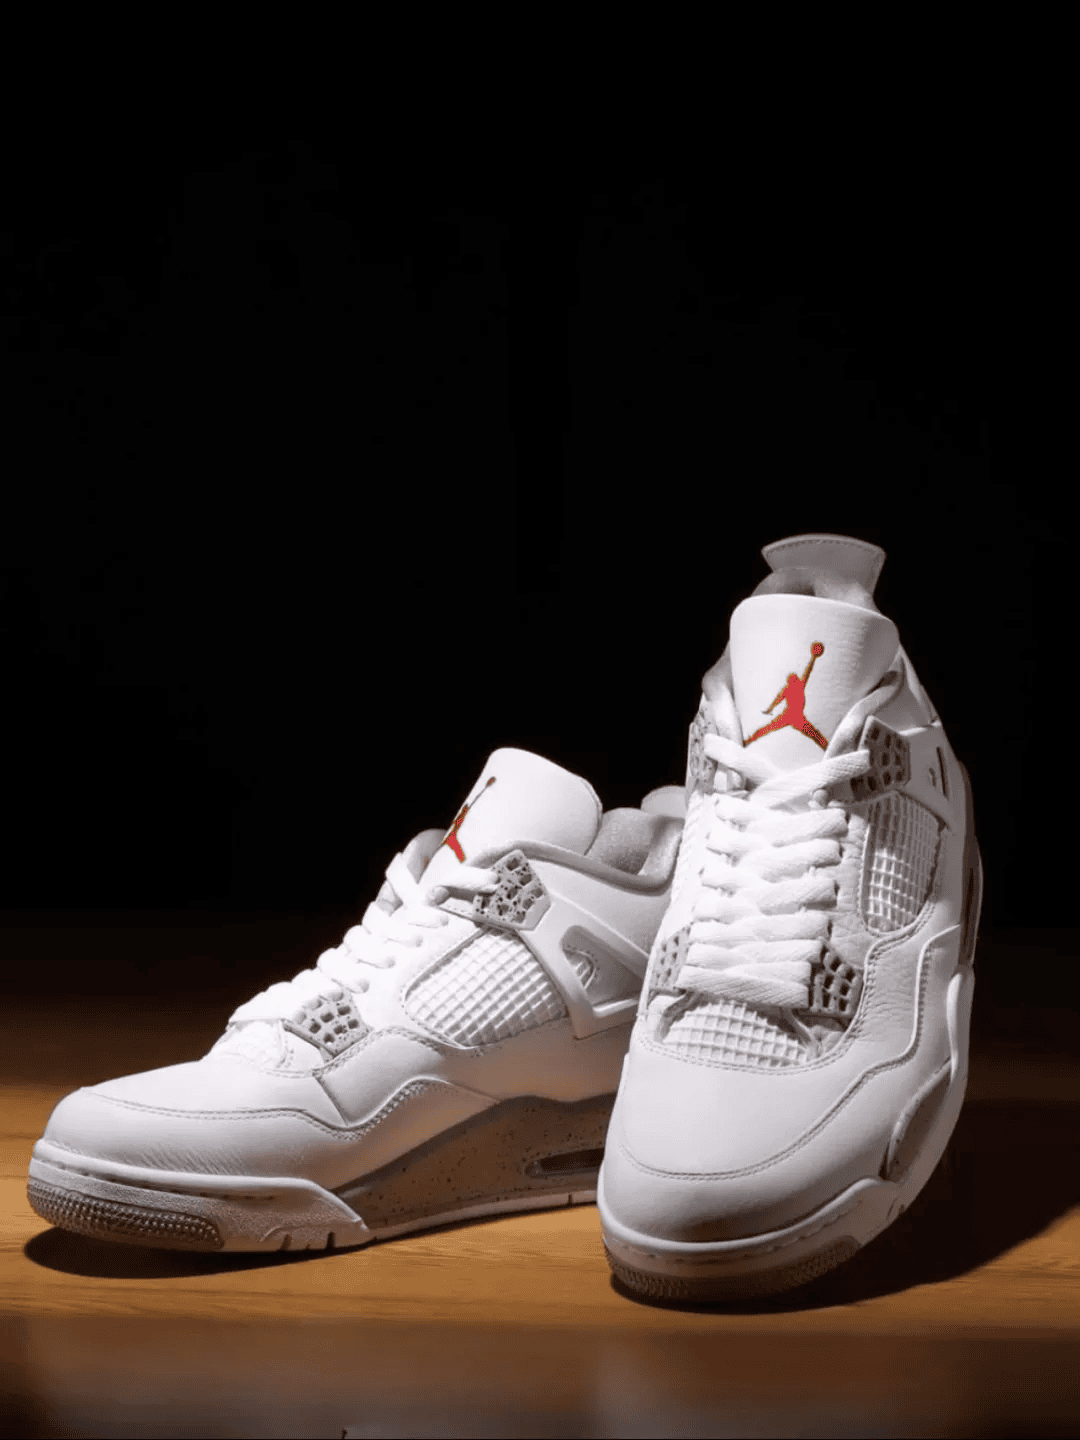 Check Out the Versatile Jordan 4 Tech White Sneaker | eBay